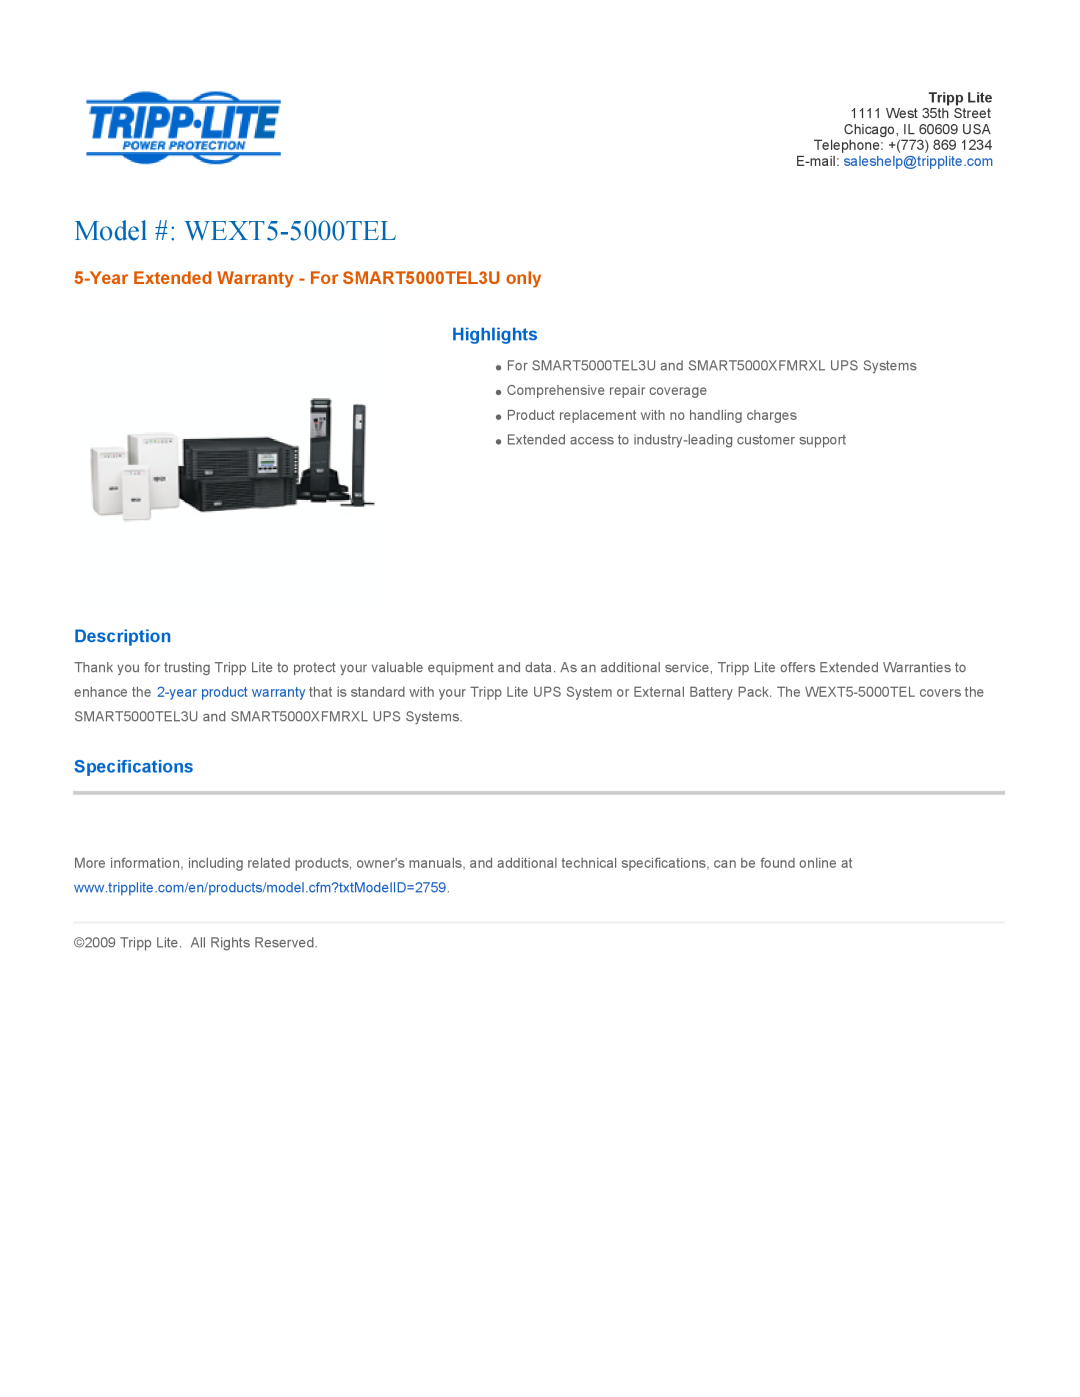 Tripp Lite warranty Model # WEXT5-5000TEL, Year Extended Warranty - For SMART5000TEL3U only, Highlights, Description 